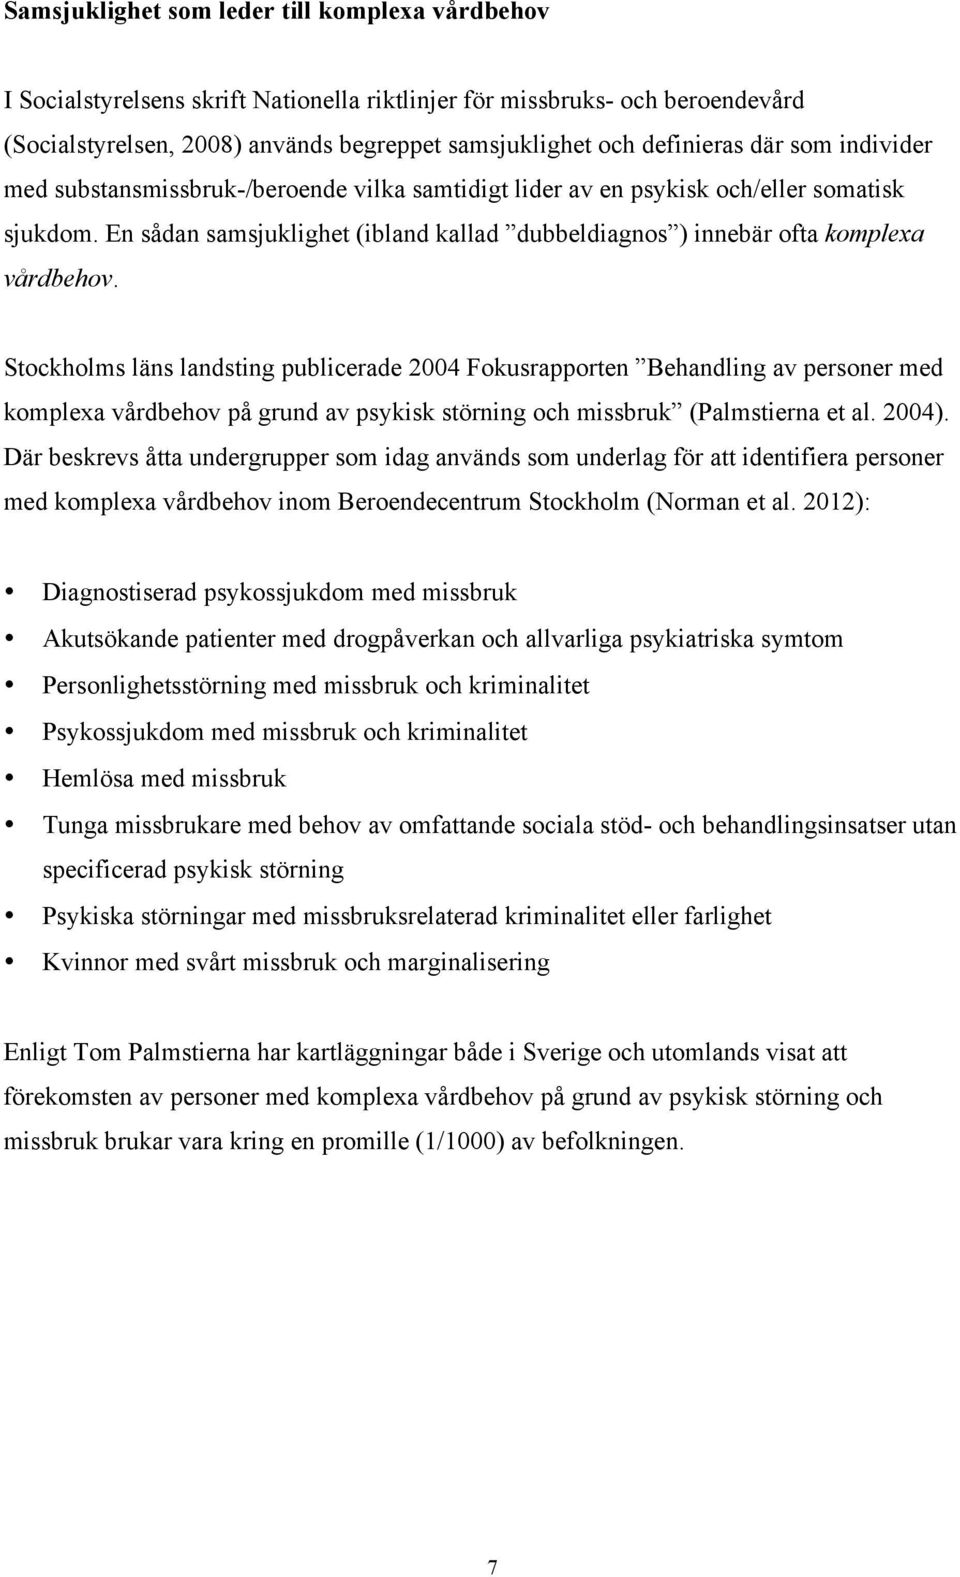 Stockholms läns landsting publicerade 2004 Fokusrapporten Behandling av personer med komplexa vårdbehov på grund av psykisk störning och missbruk (Palmstierna et al. 2004).